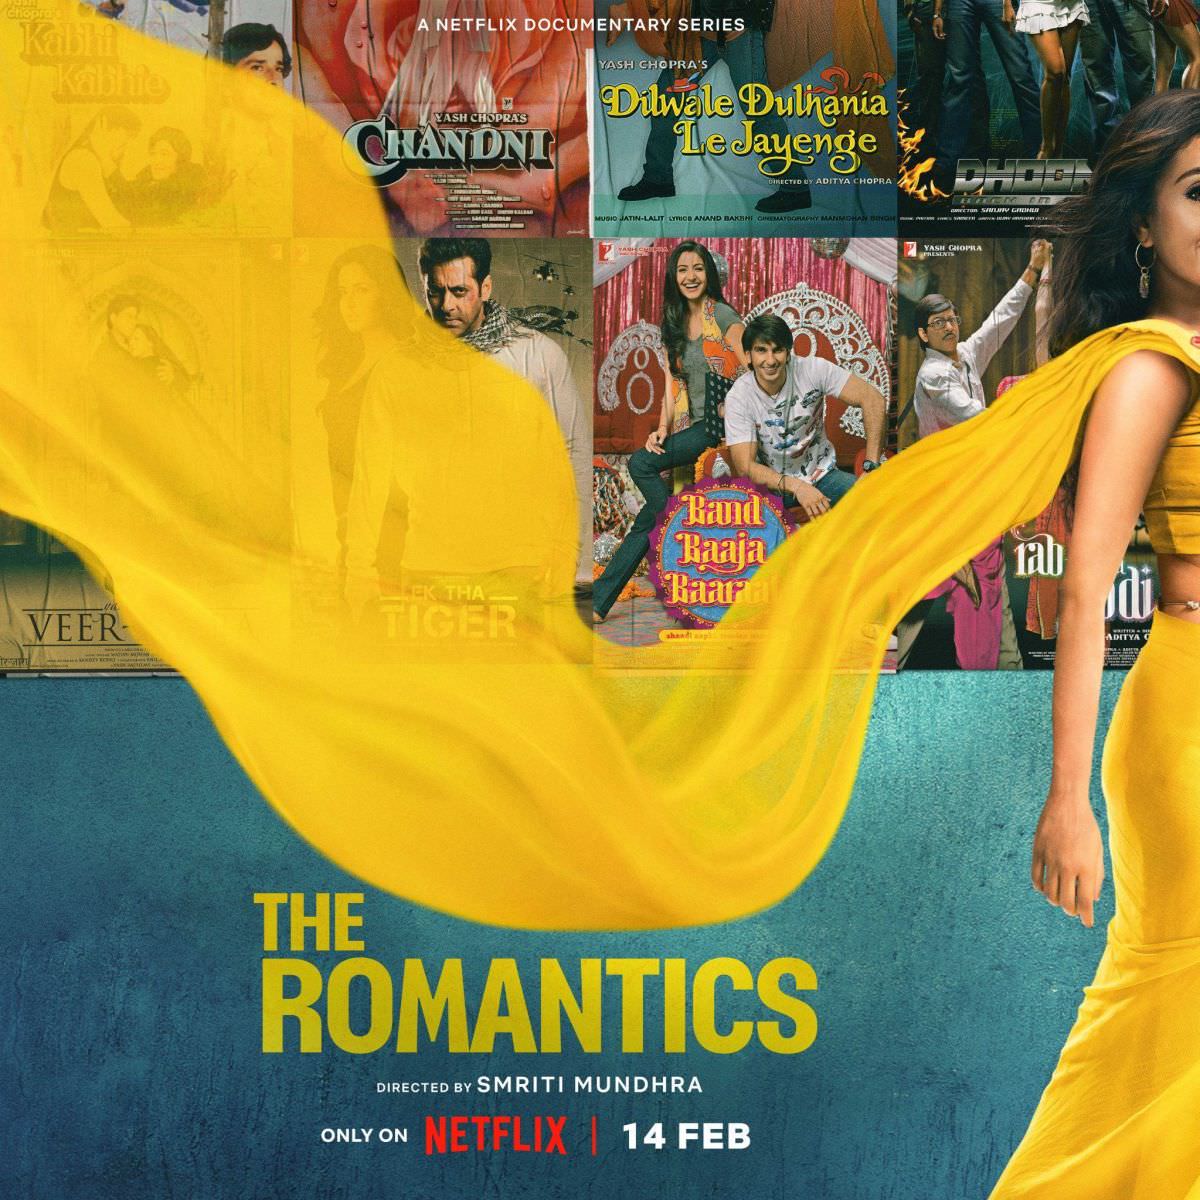 印度影集《寶萊塢的浪漫主義》(The Romantics)